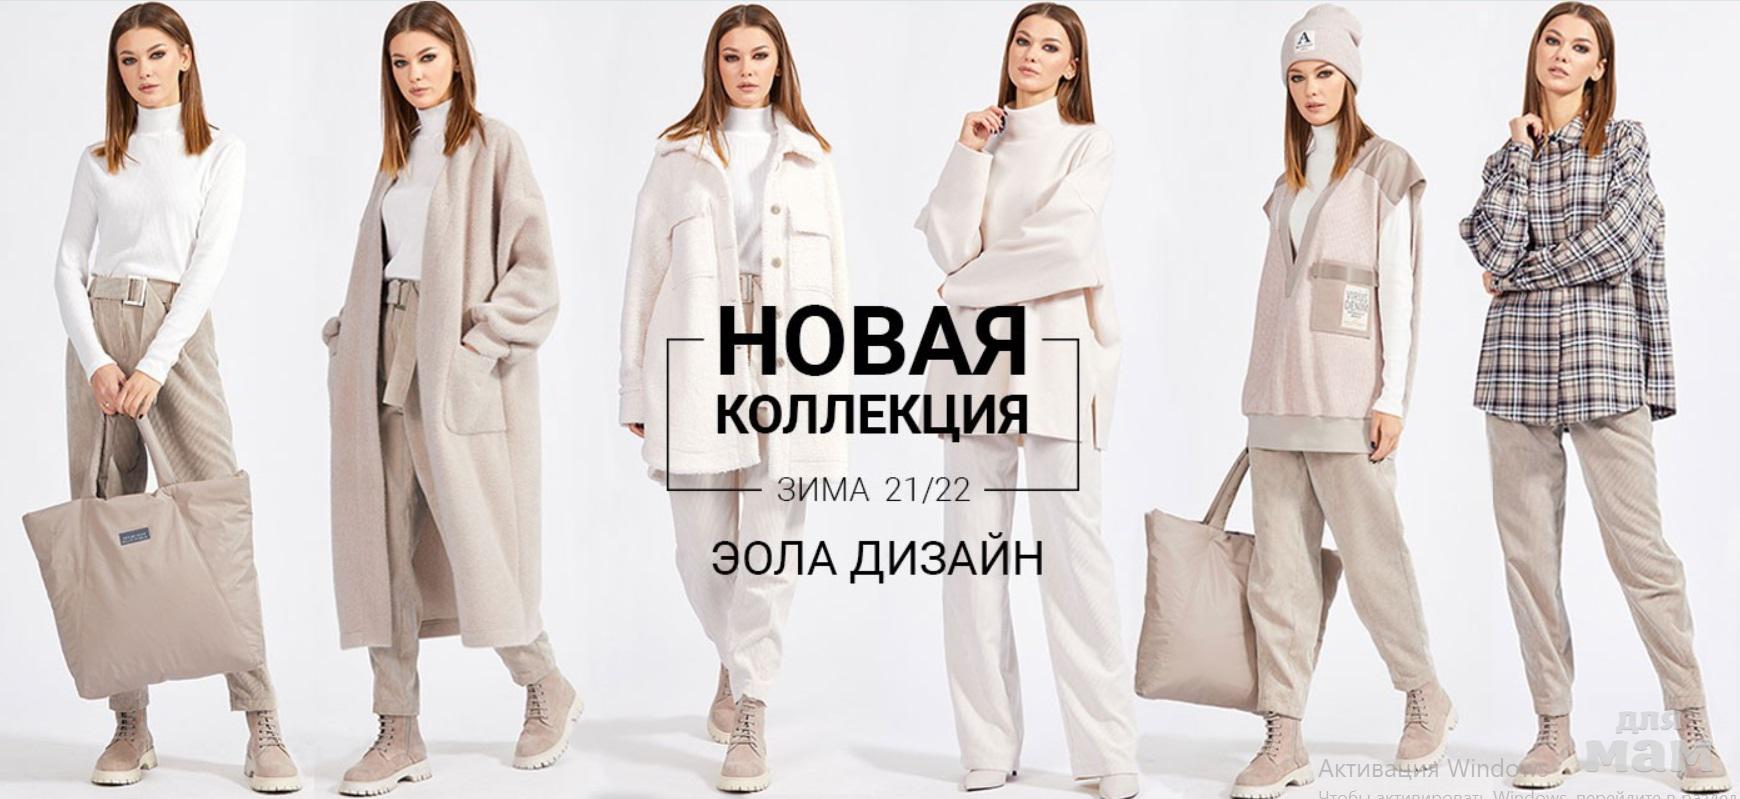 Белбазар24 Интернет Магазин Белорусской Одежды